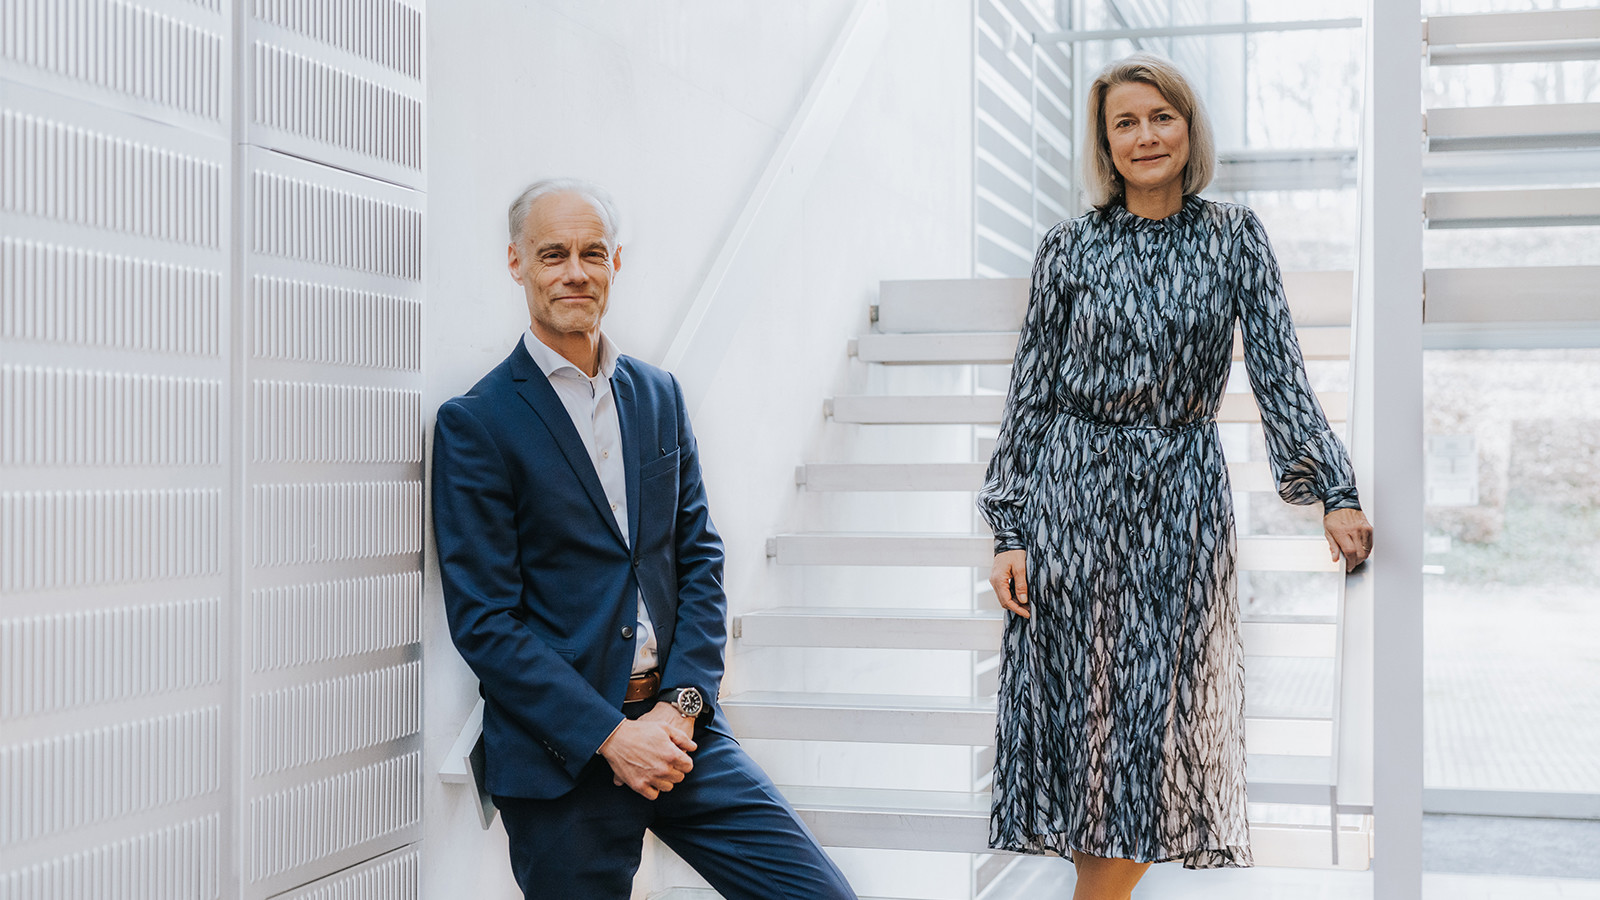 Eva Berneke forlader KMD, og Per Johansson overtager posten som CEO